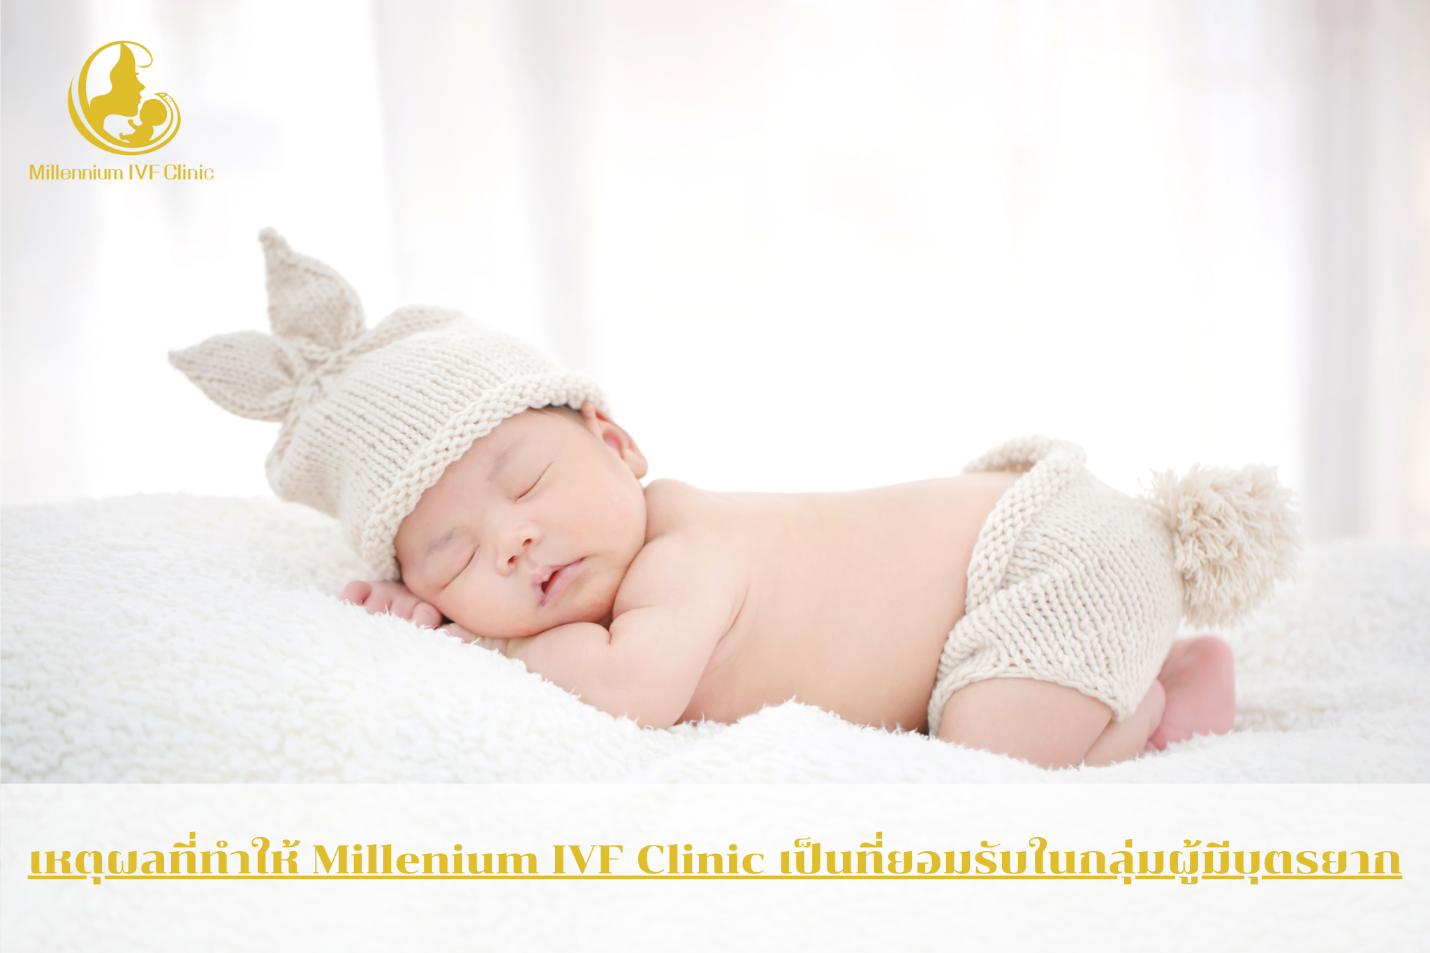 คลินิก Millenium IVF Clinic เป็นศูนย์รักษาผู้มีบุตรยากโดย พญ. นฤมิต วงศ์ลิขิตปัญญา